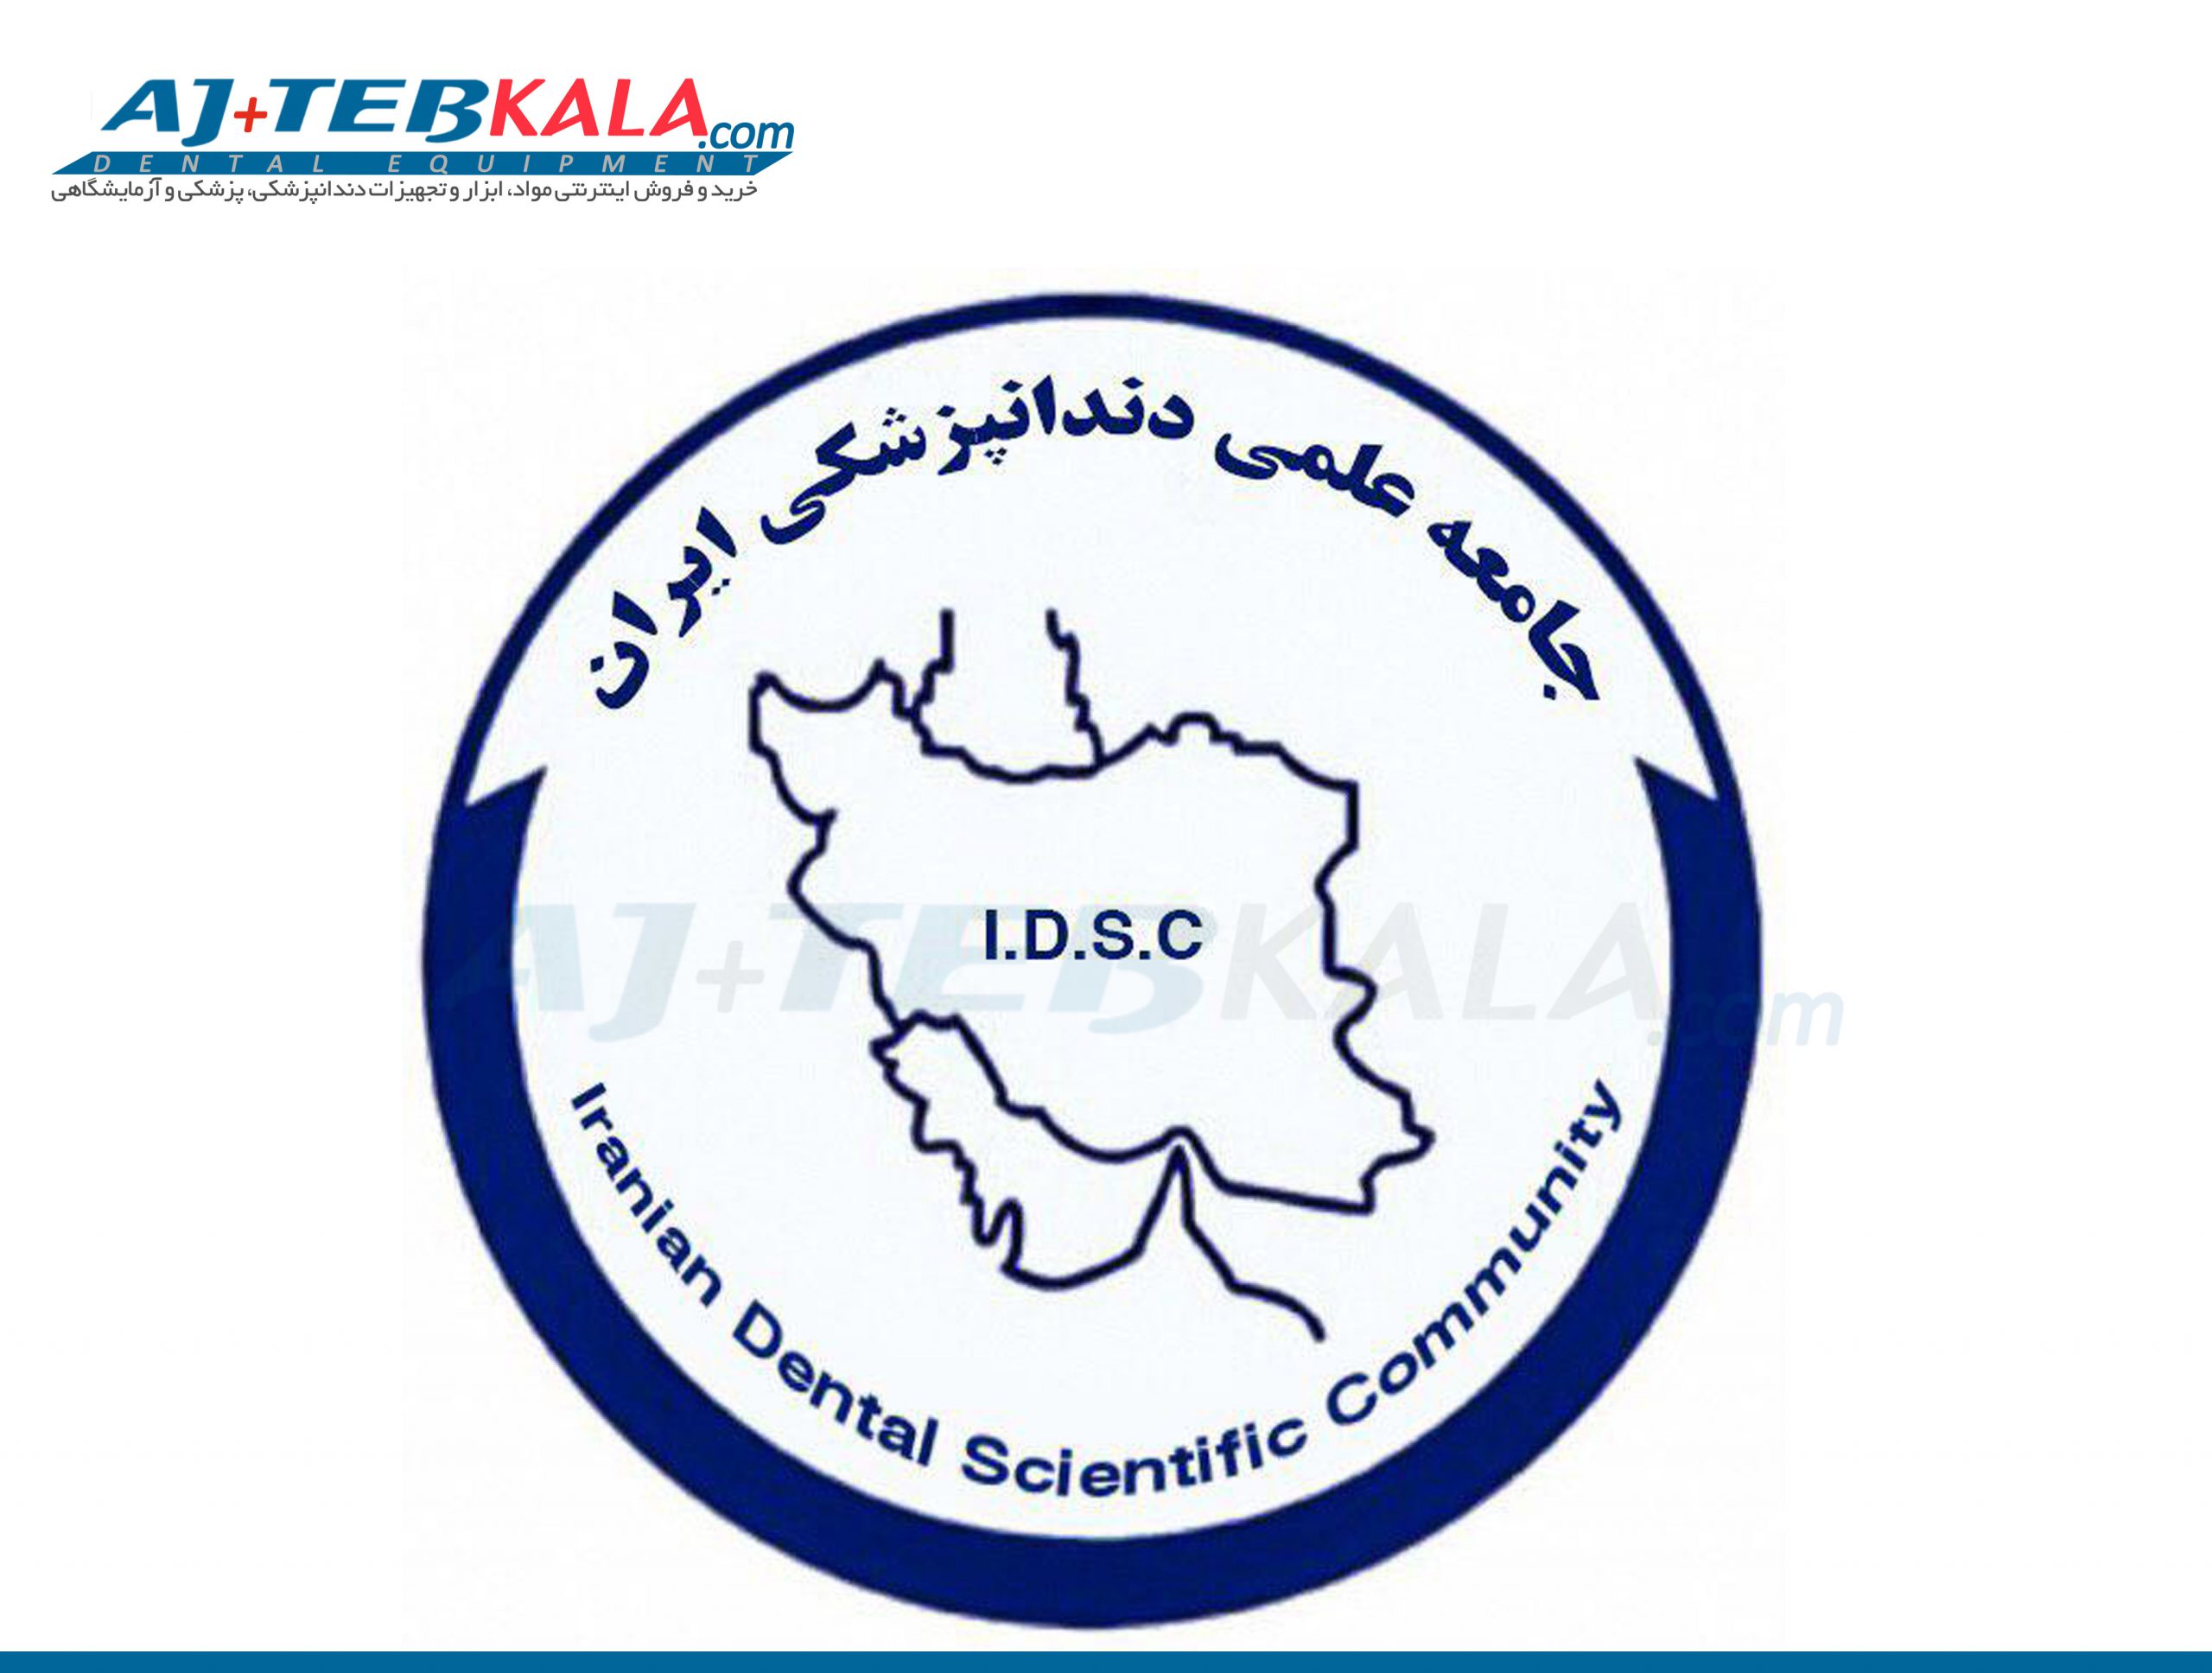 انجمن دندانپزشکان عمومی ایران